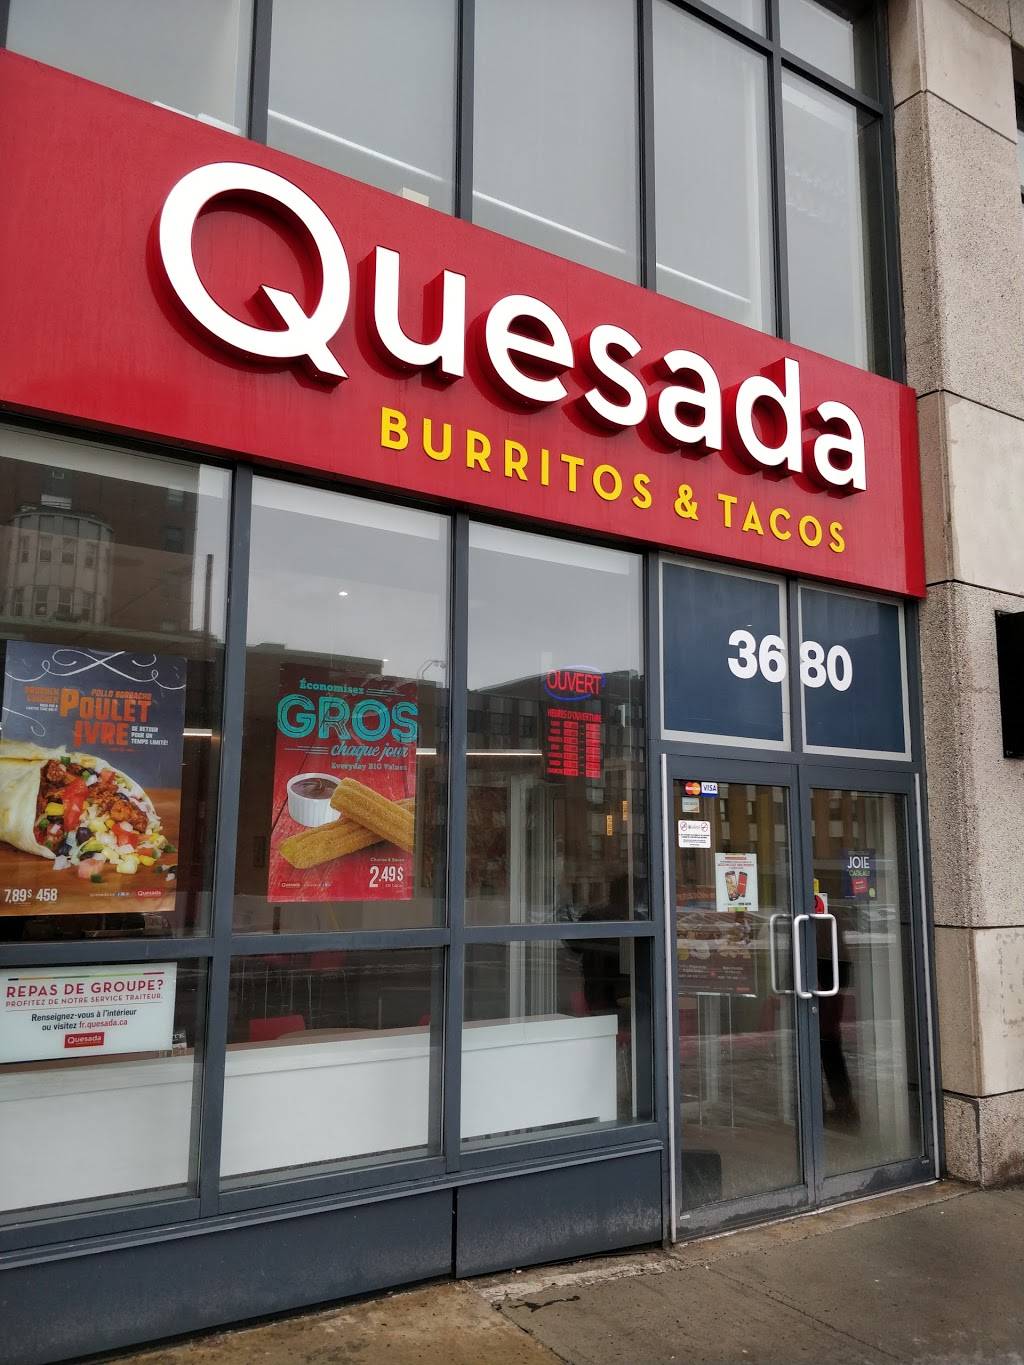 Quesada Restaurant / Quesada Burritos Tacos From Vaudreuil Dorion Menu